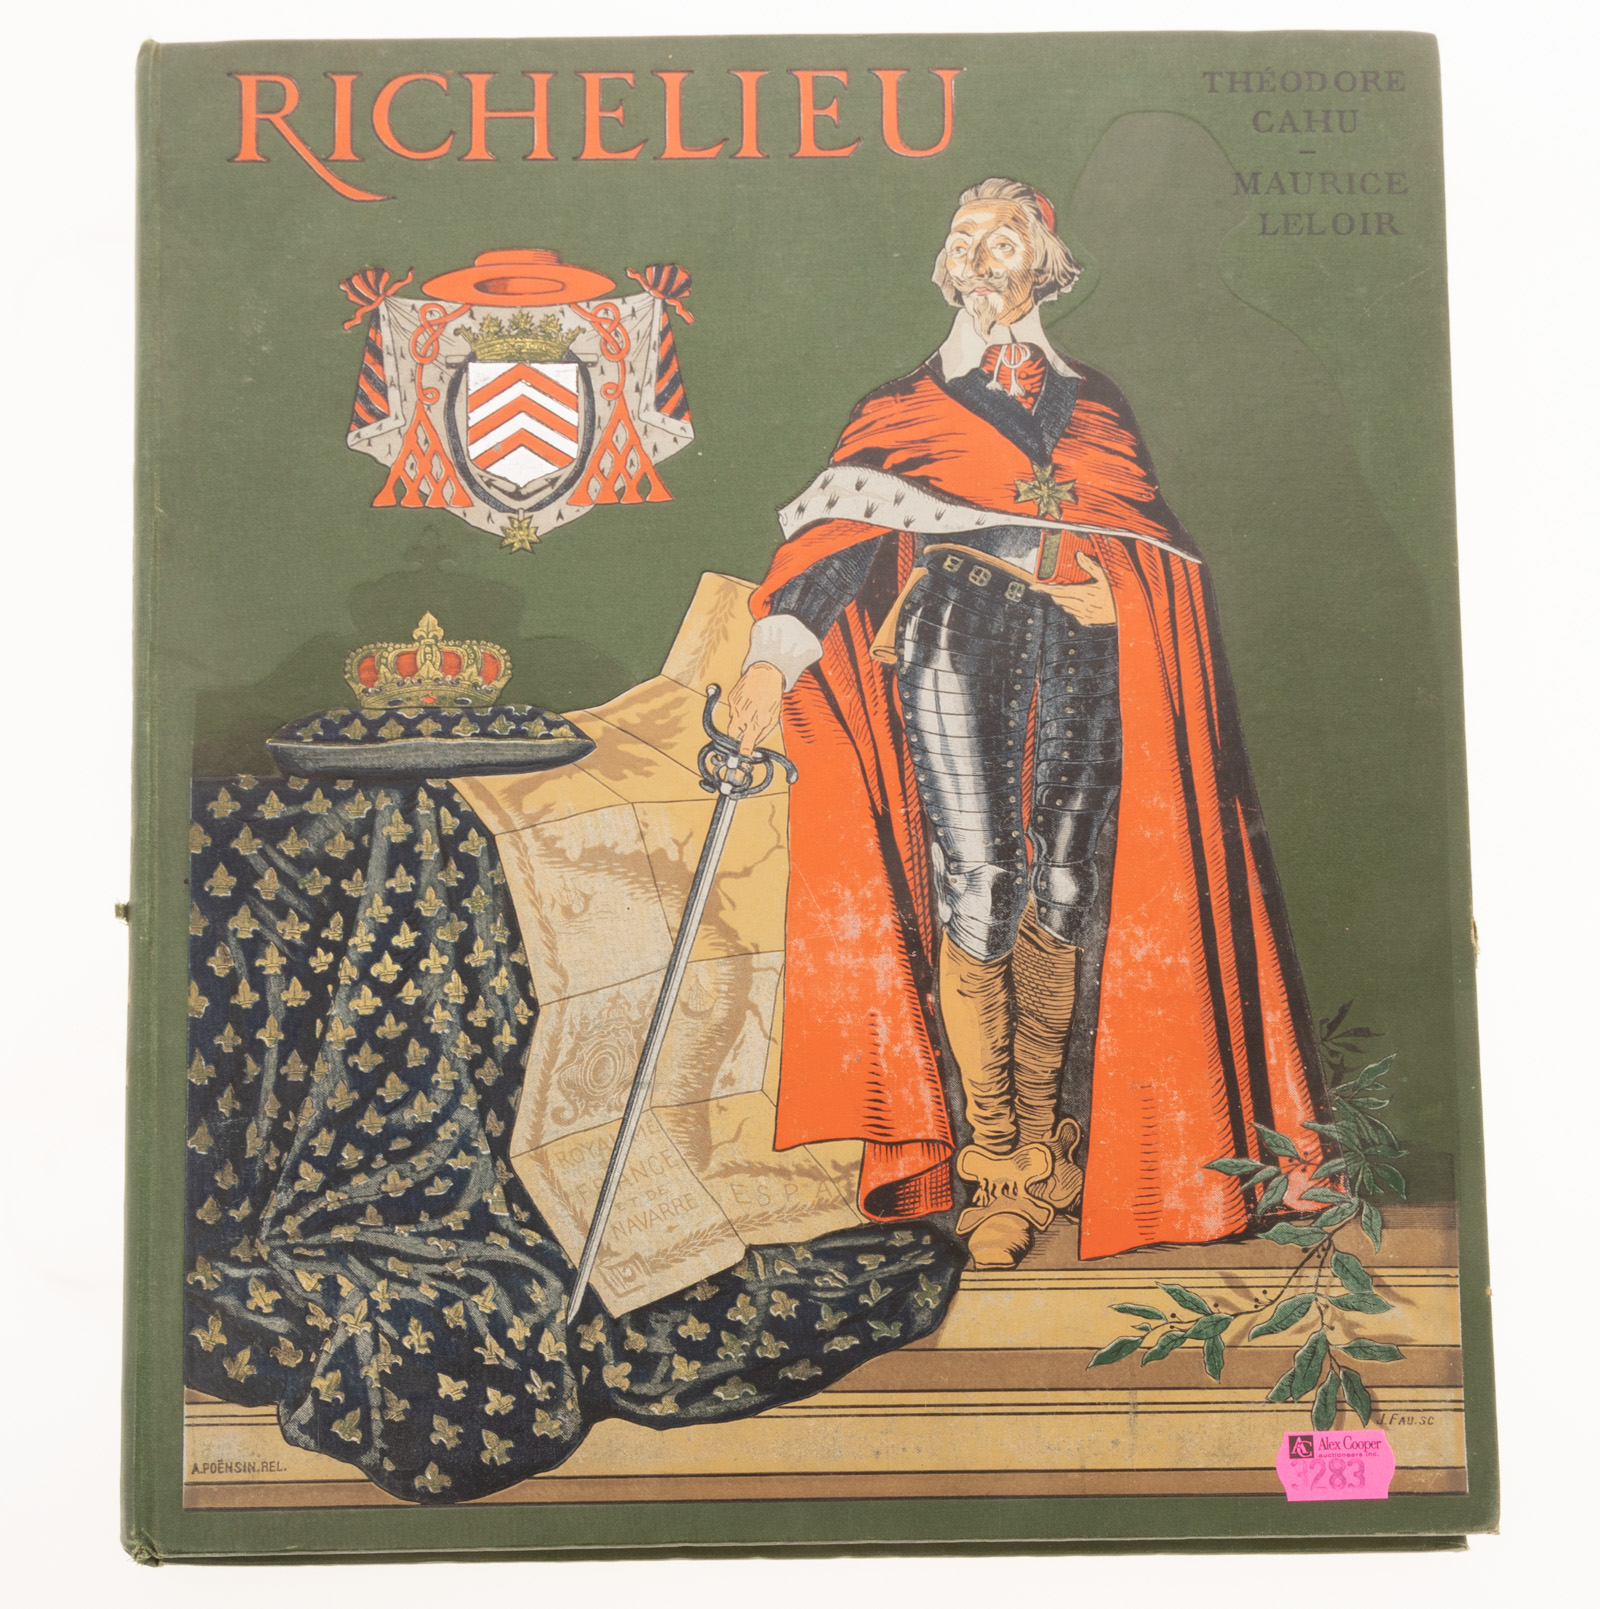 FRENCH HISTORY BOOK RICHELIEU  2e95e4